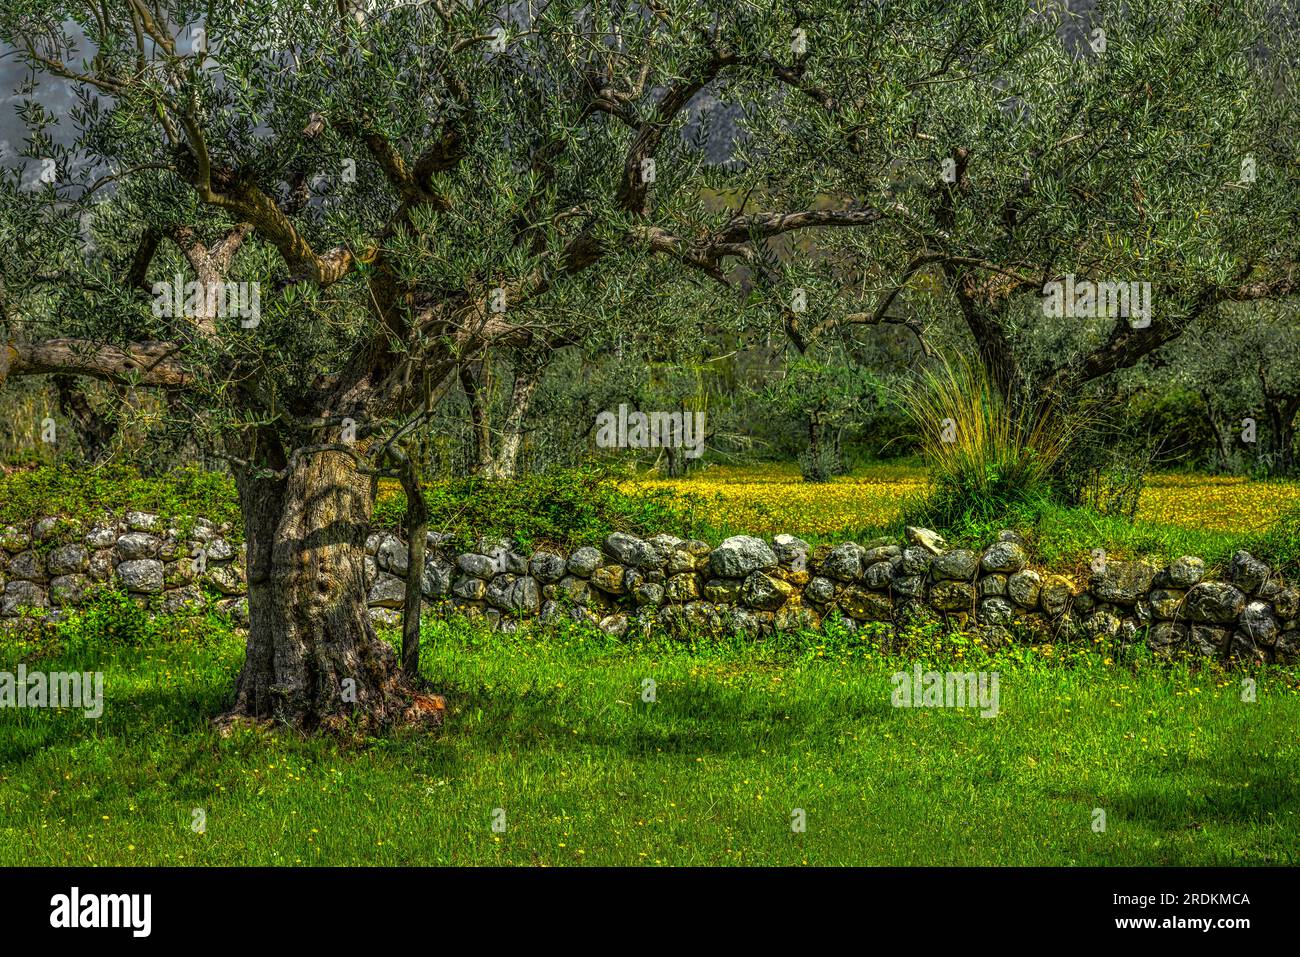 Plantación de olivos mediterráneos con olivos antiguos y muro de piedra. Foto de stock